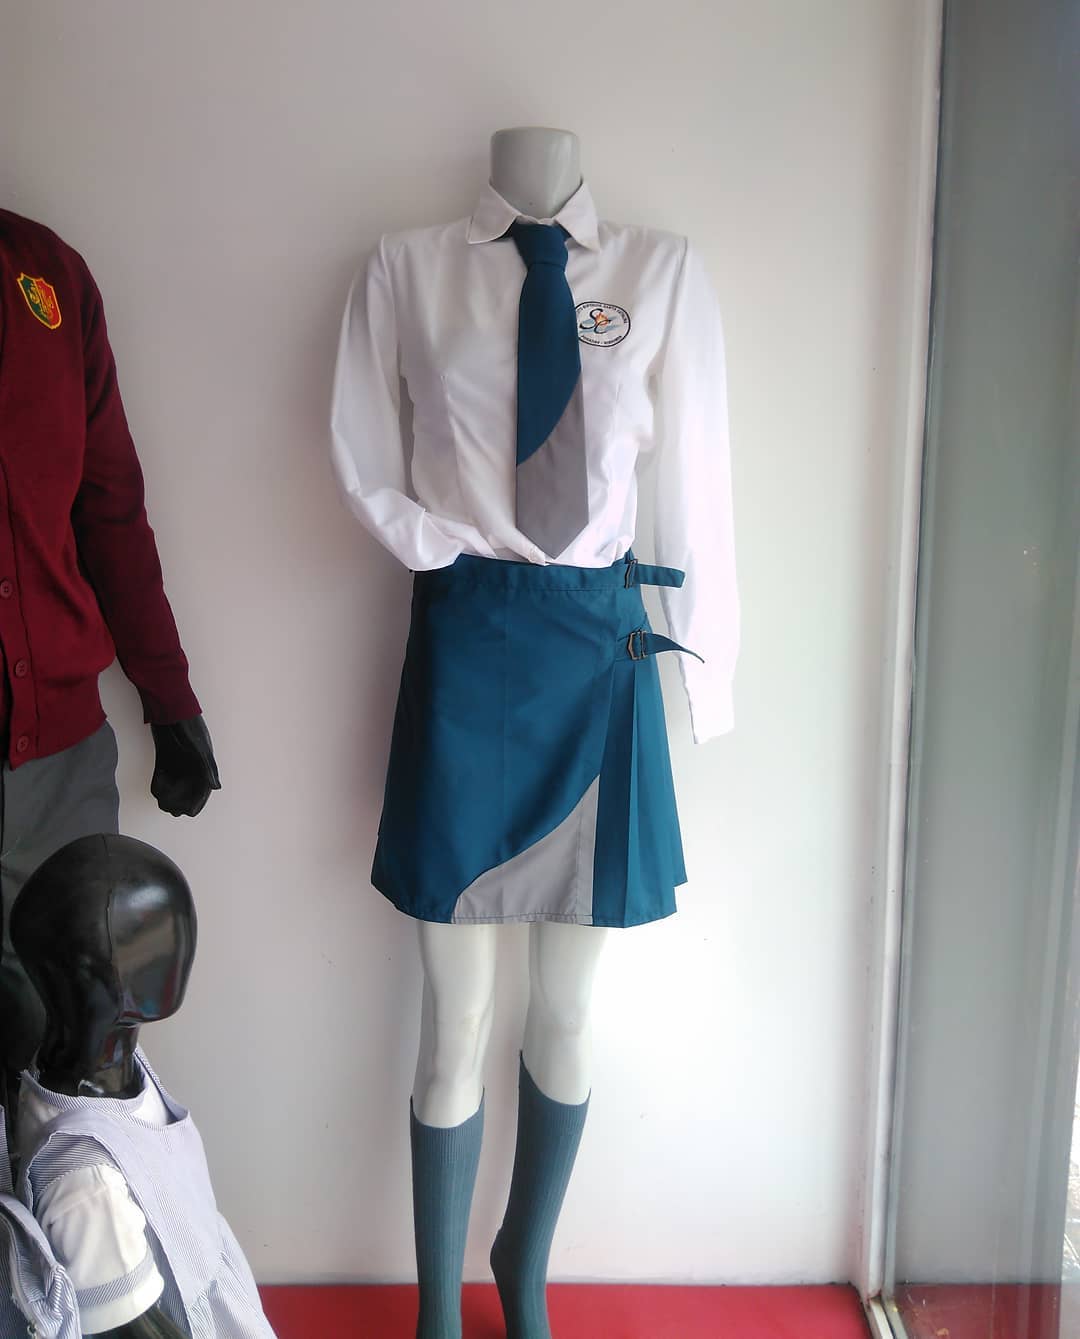 Vuelta a Clases: comprar el uniforme escolar saldría alrededor de 40.000 mil pesos imagen-2